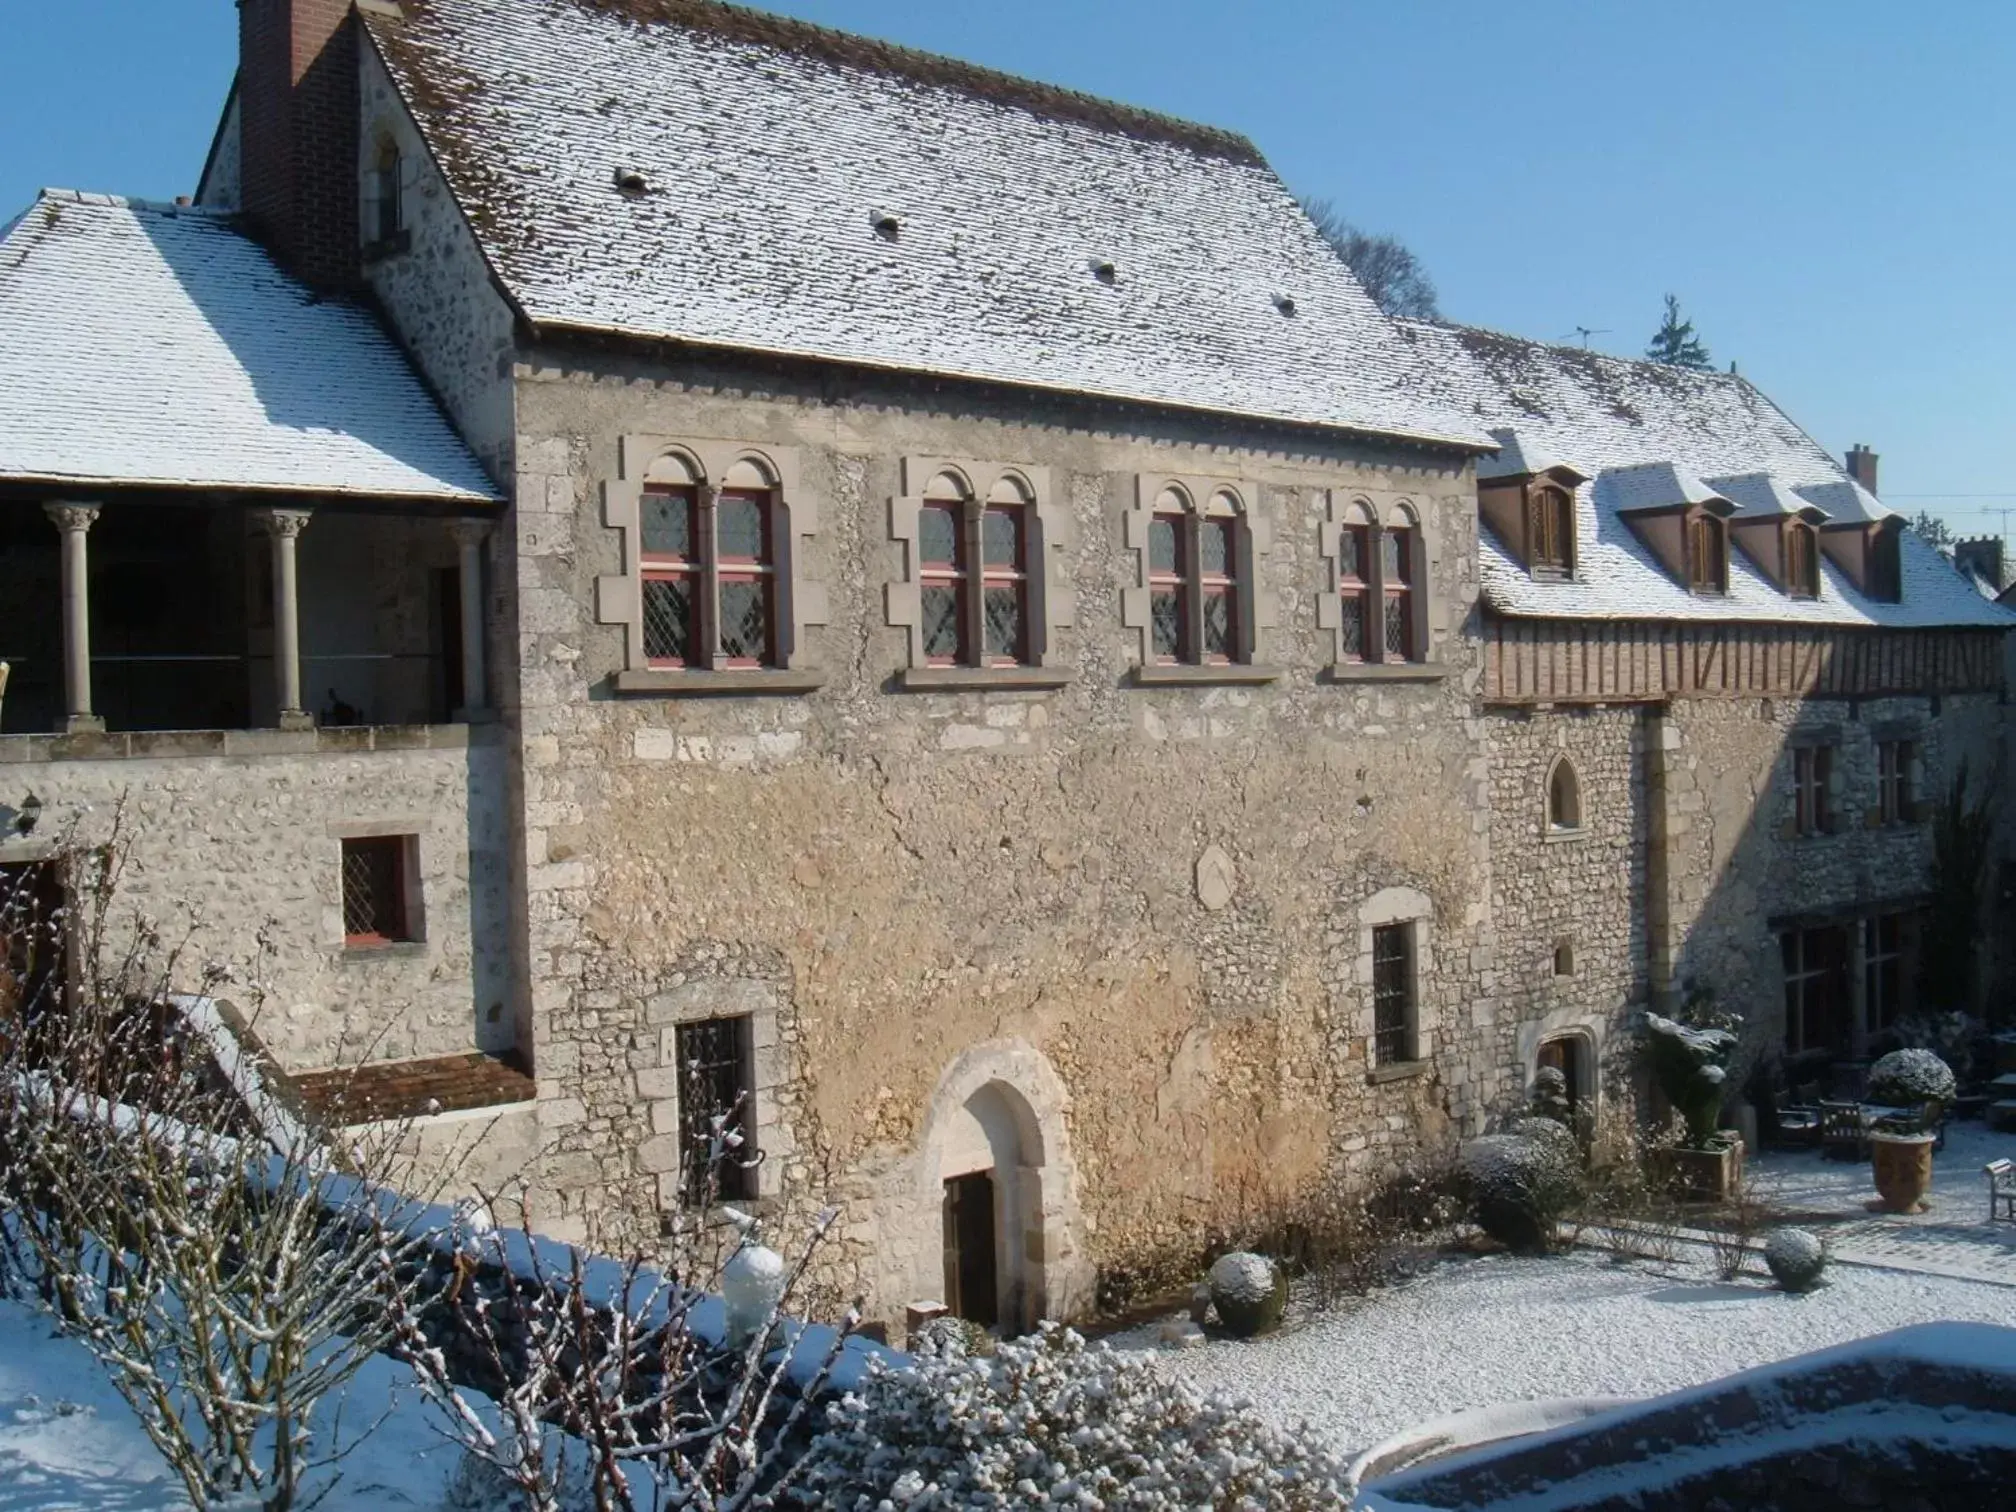 Property building, Winter in Demeure des Vieux Bains